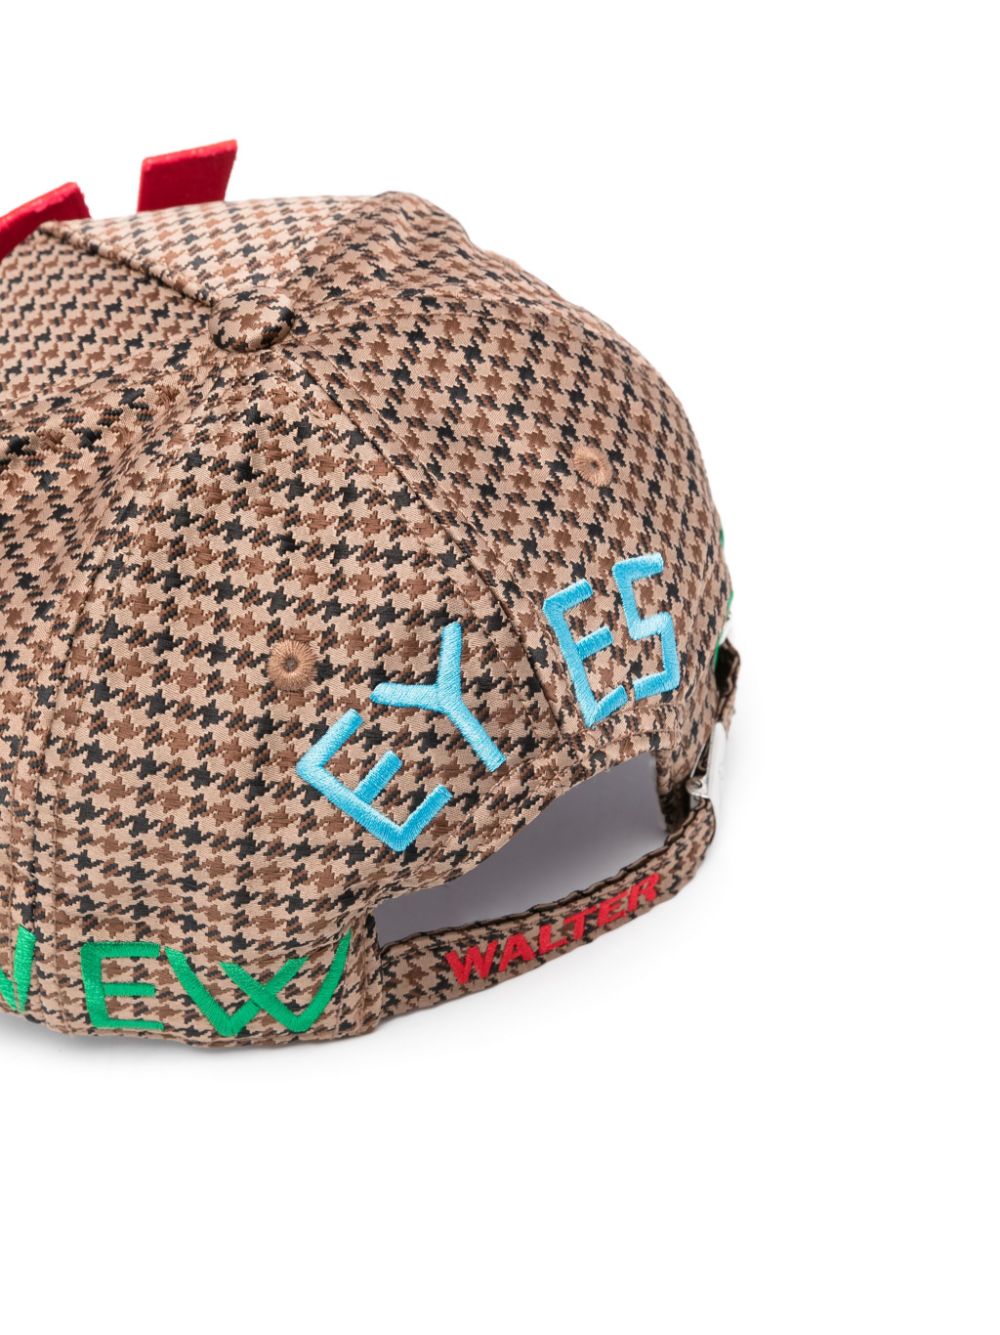 Louis Vuitton Iconic Monogram pattern Baseball Hat In Brown/Wash